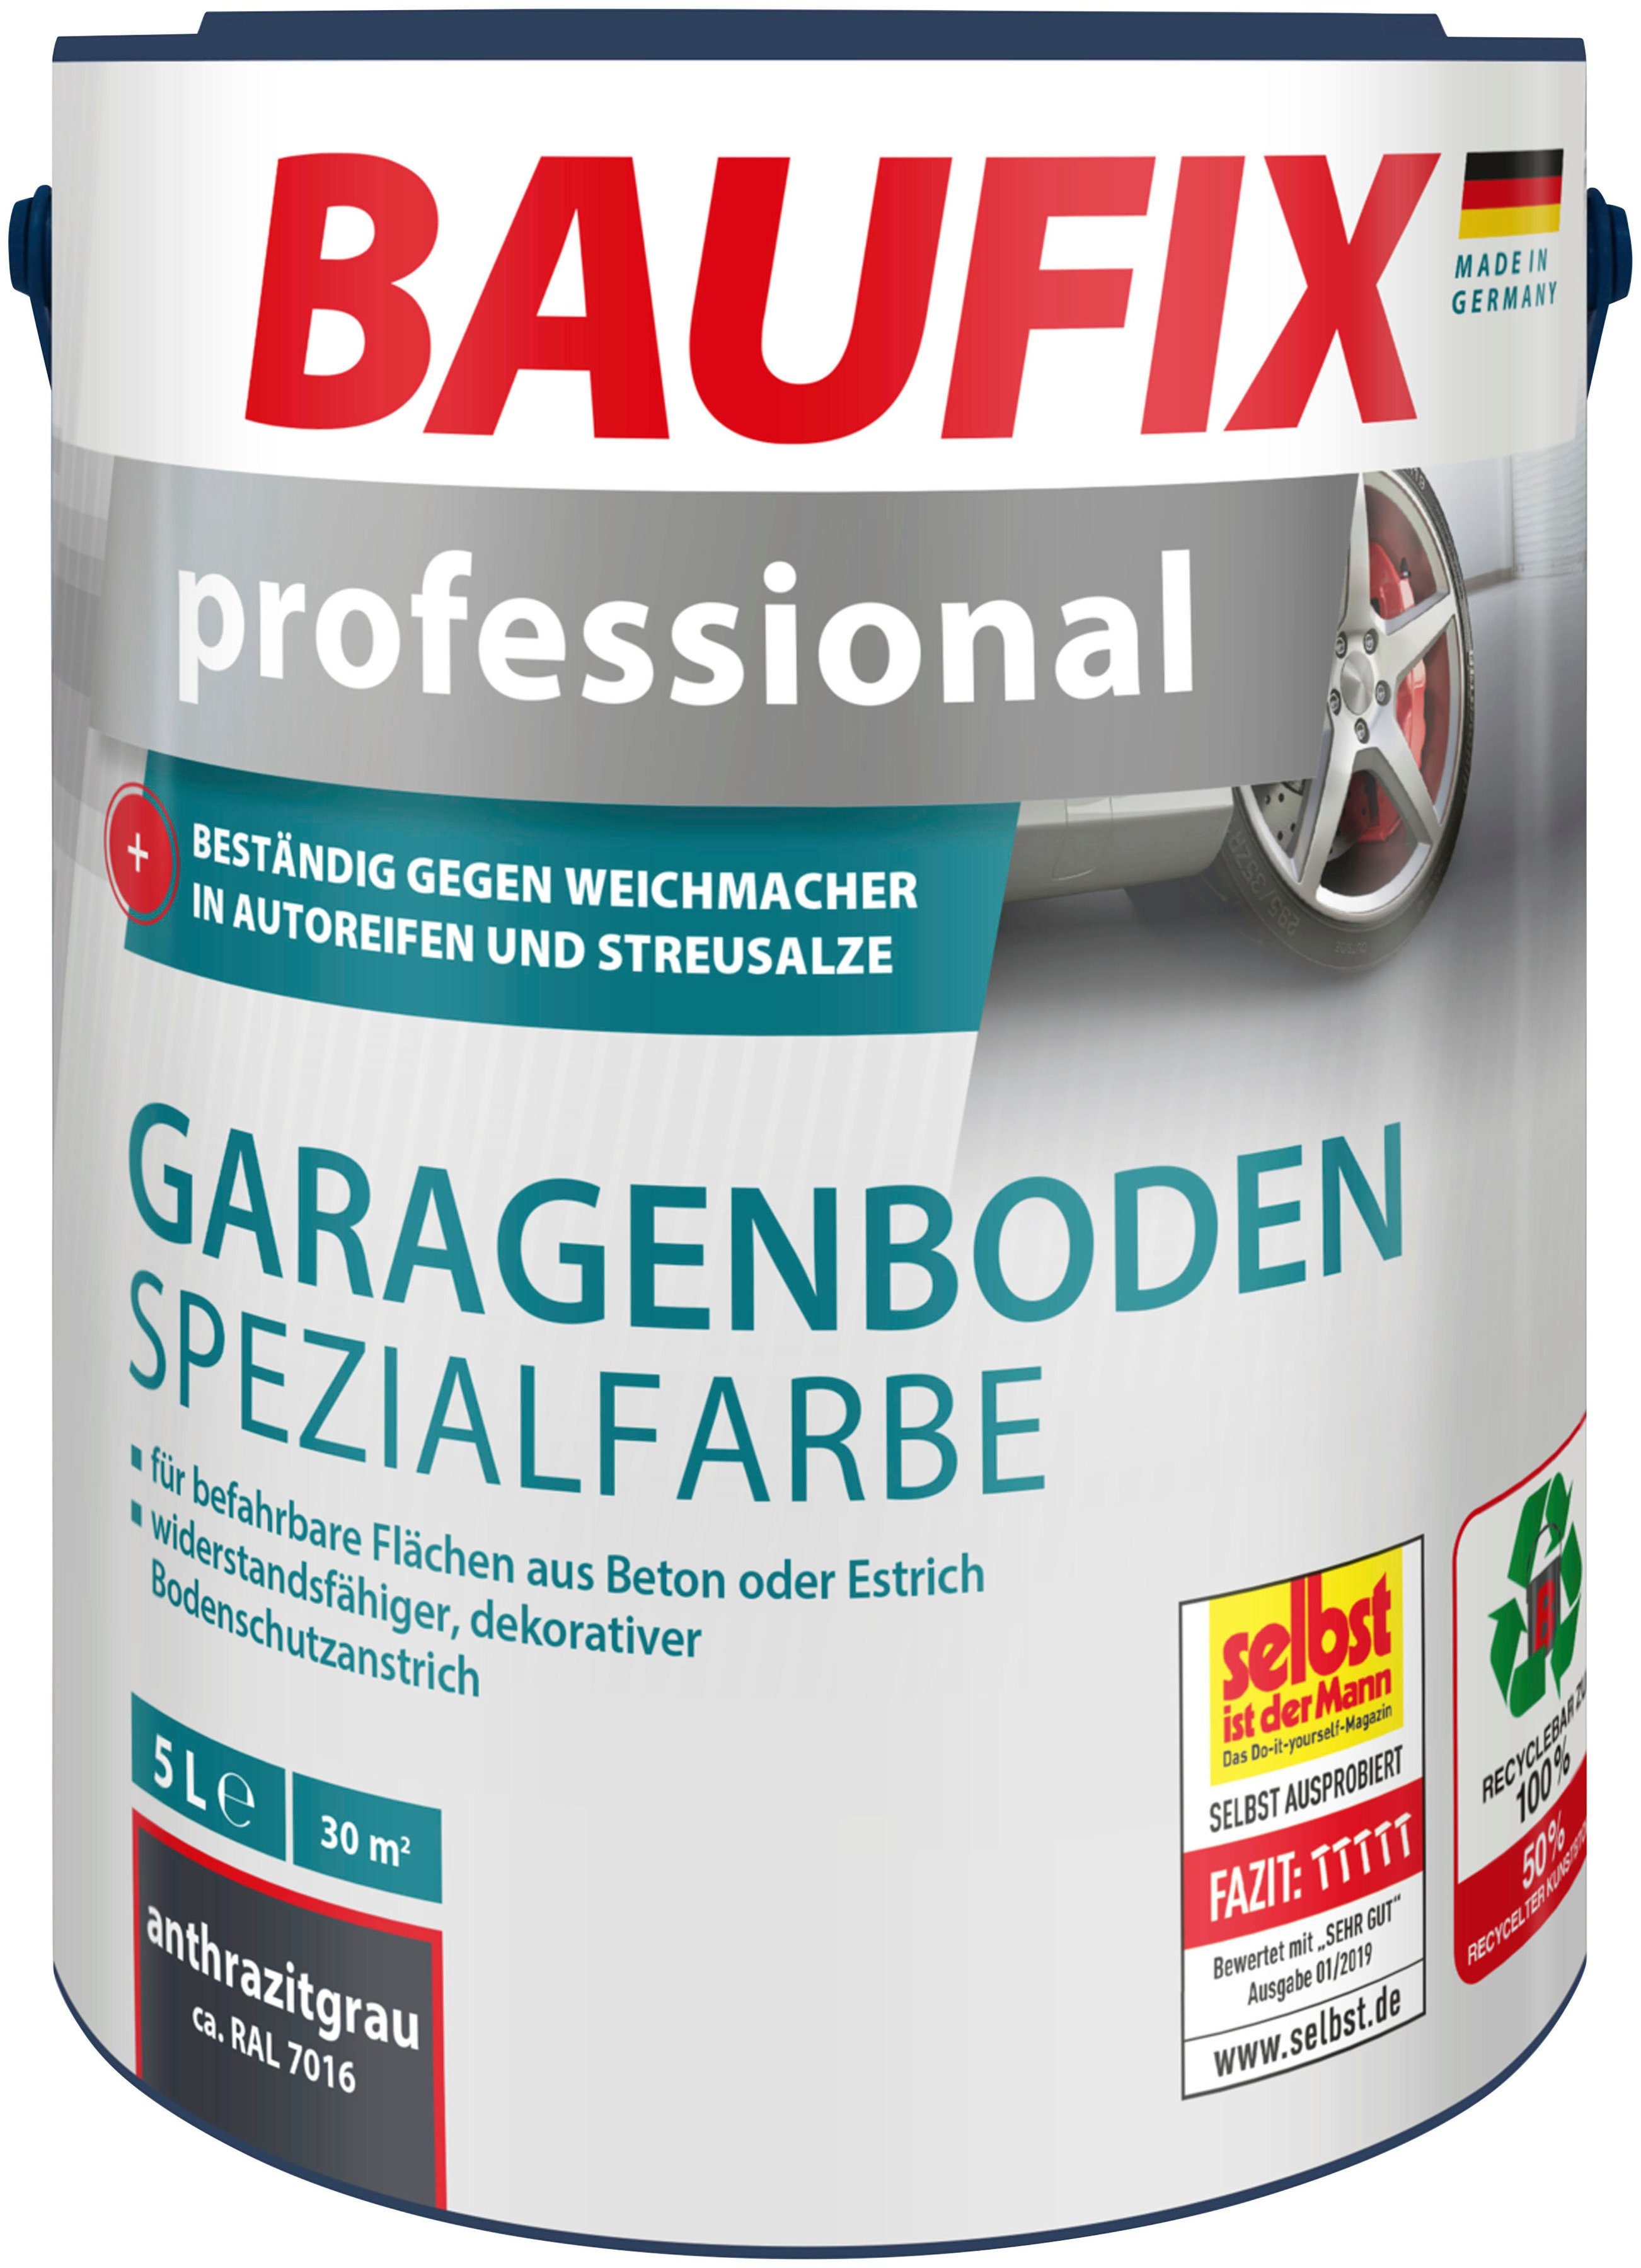 Baufix Acryl-Flüssigkunststoff professional Garagenboden Spezialfarbe, wasserbeständig, UV beständig, wetterbeständig, 5L, matt anthrazitgrau | Bodenbeschichtungen